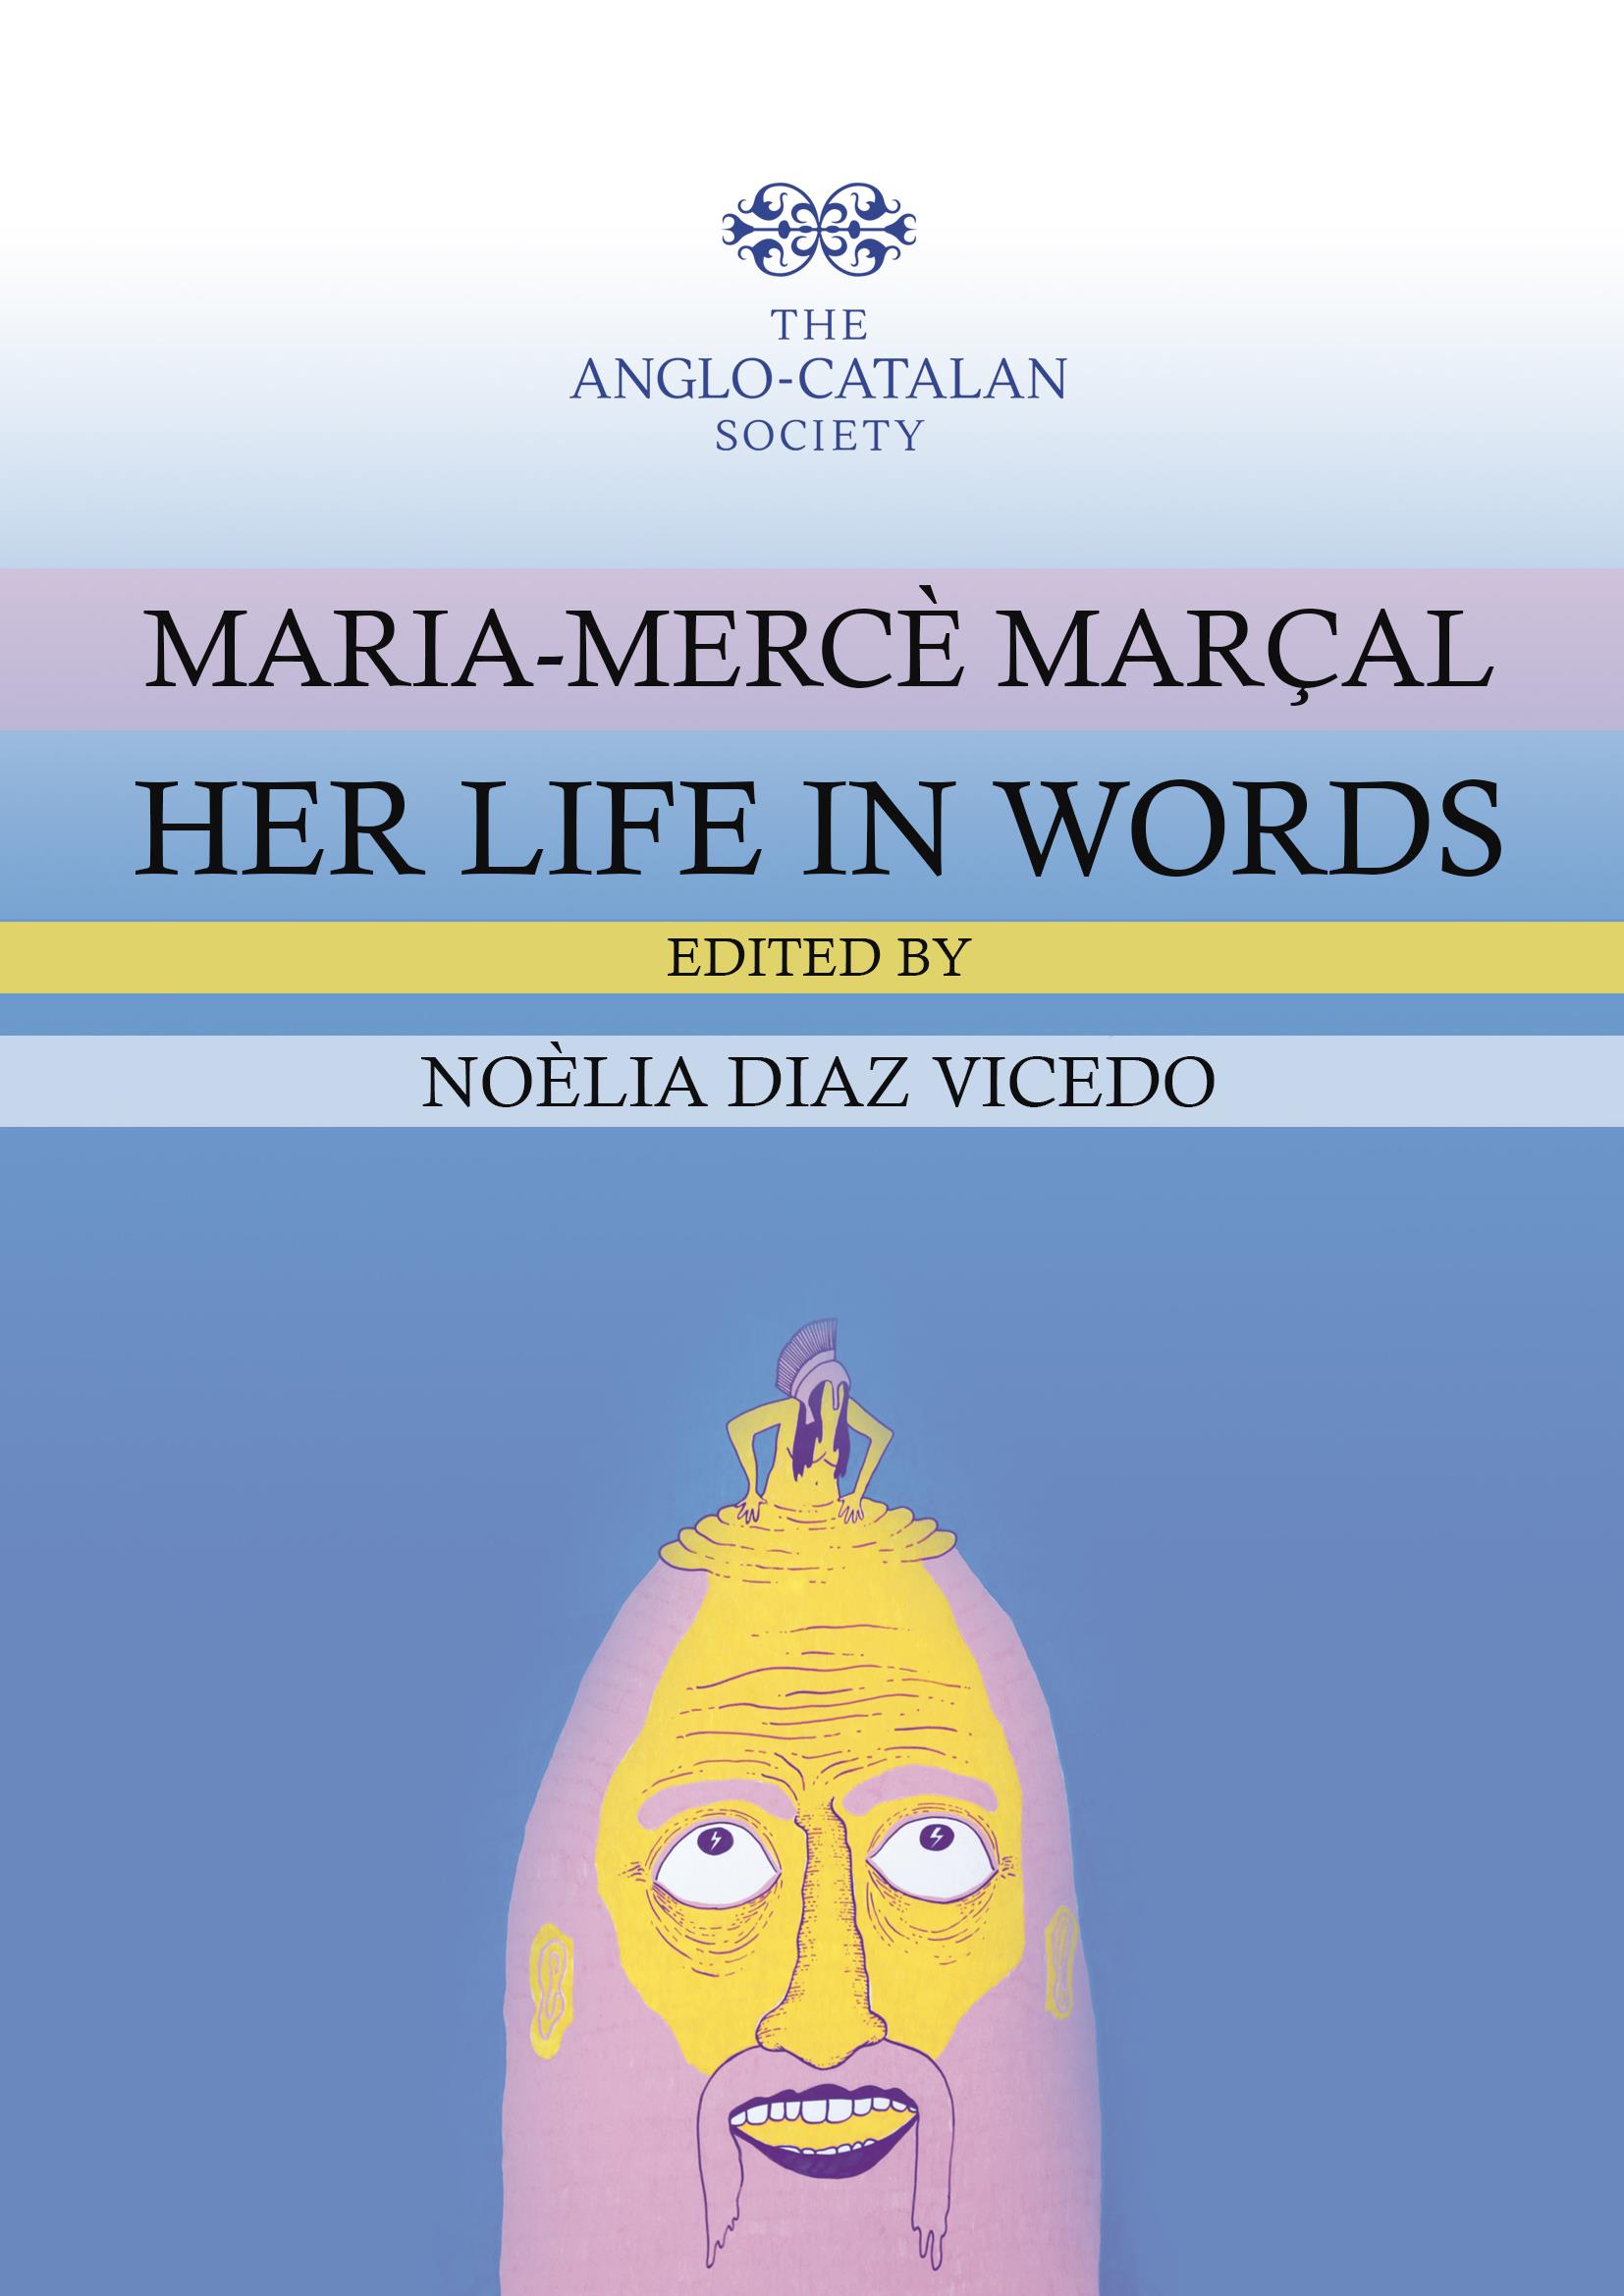 Imagen de portada del libro Maria-Mercè Marçal